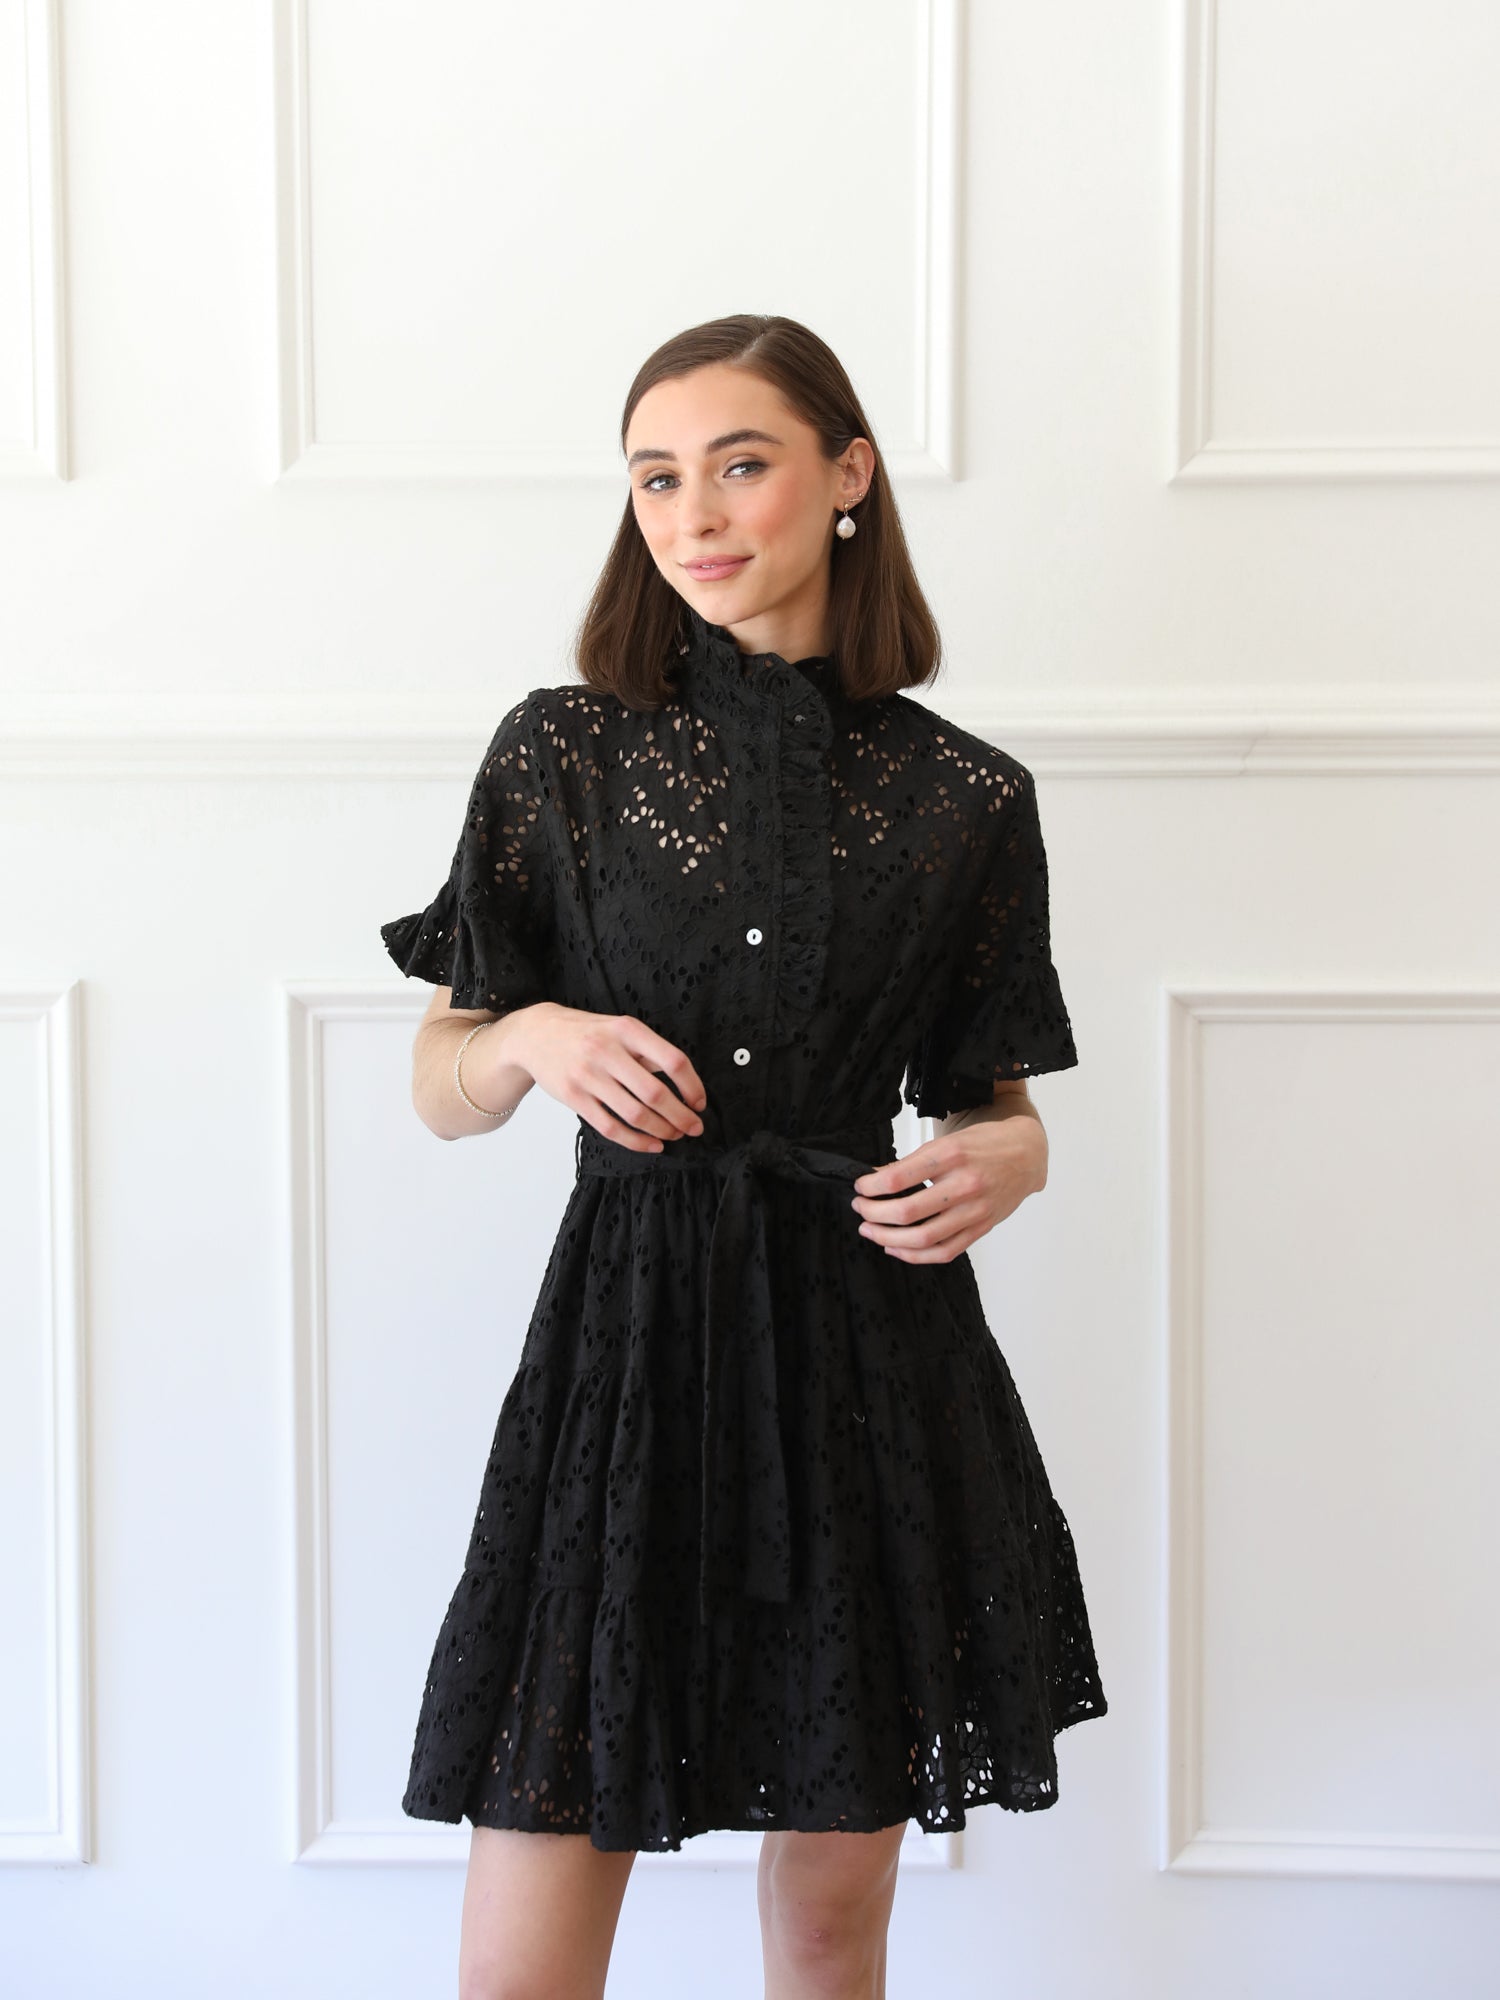 MILLE Clothing Violetta Dress in Black Floral Eyelet